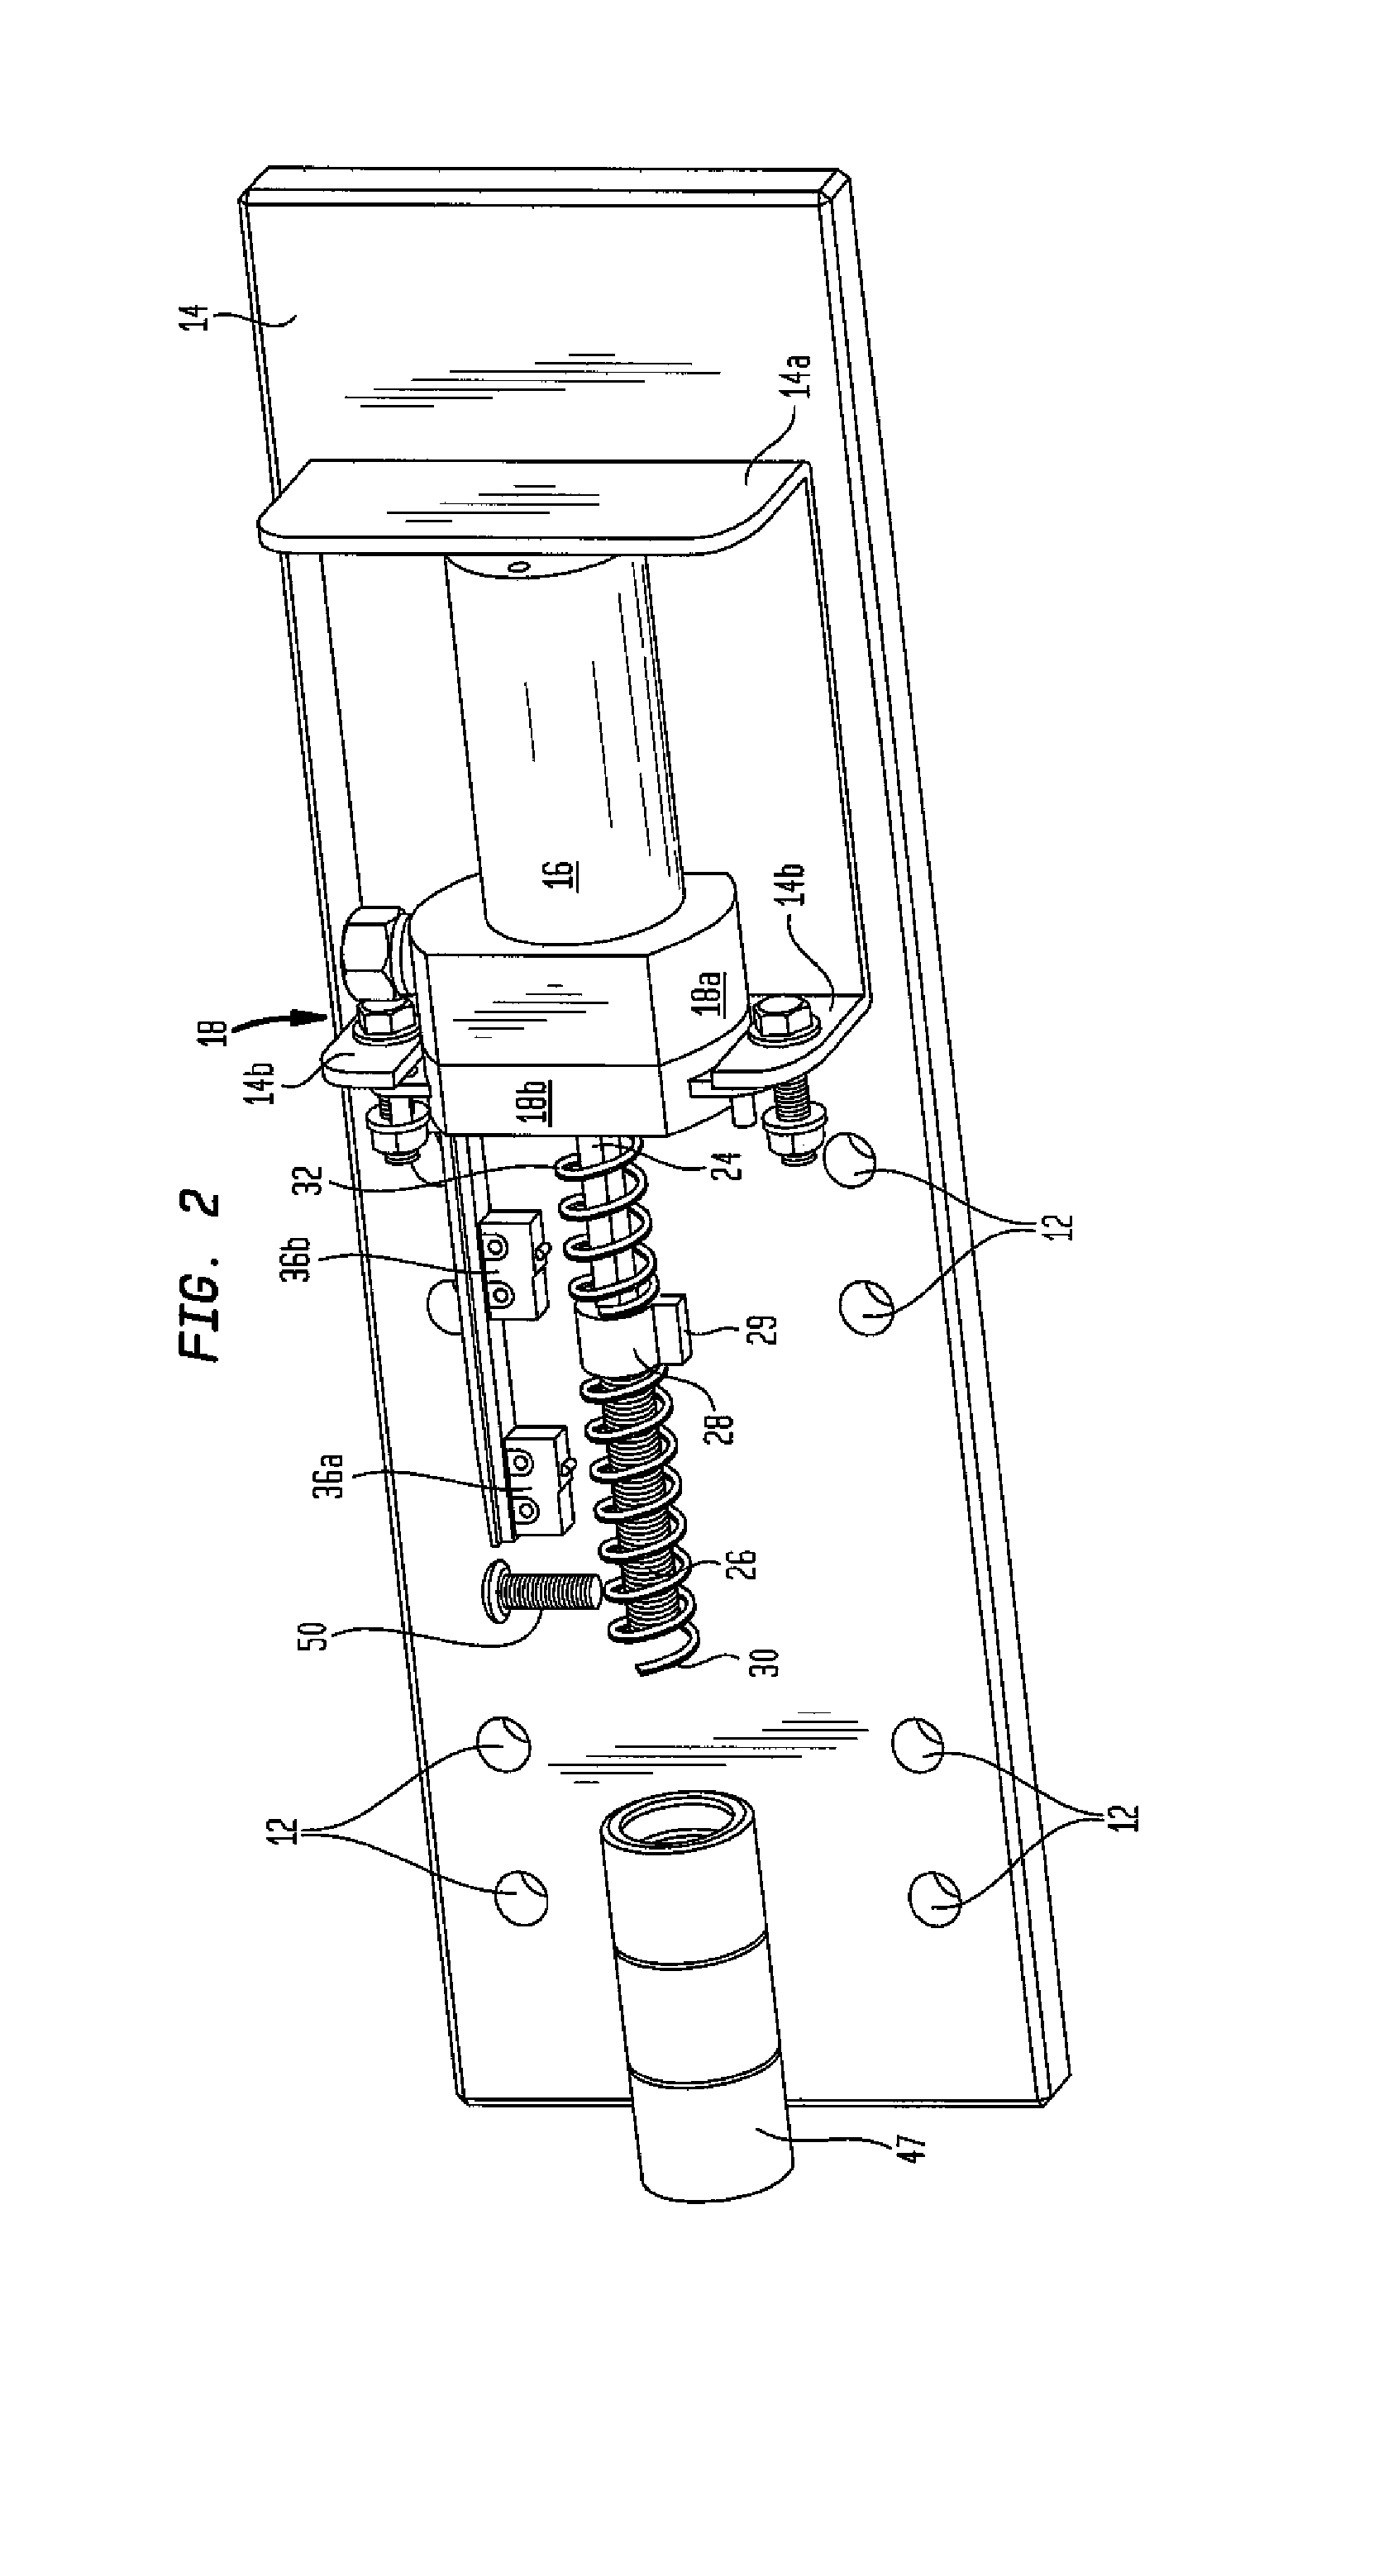 Motor driven lock for truck door